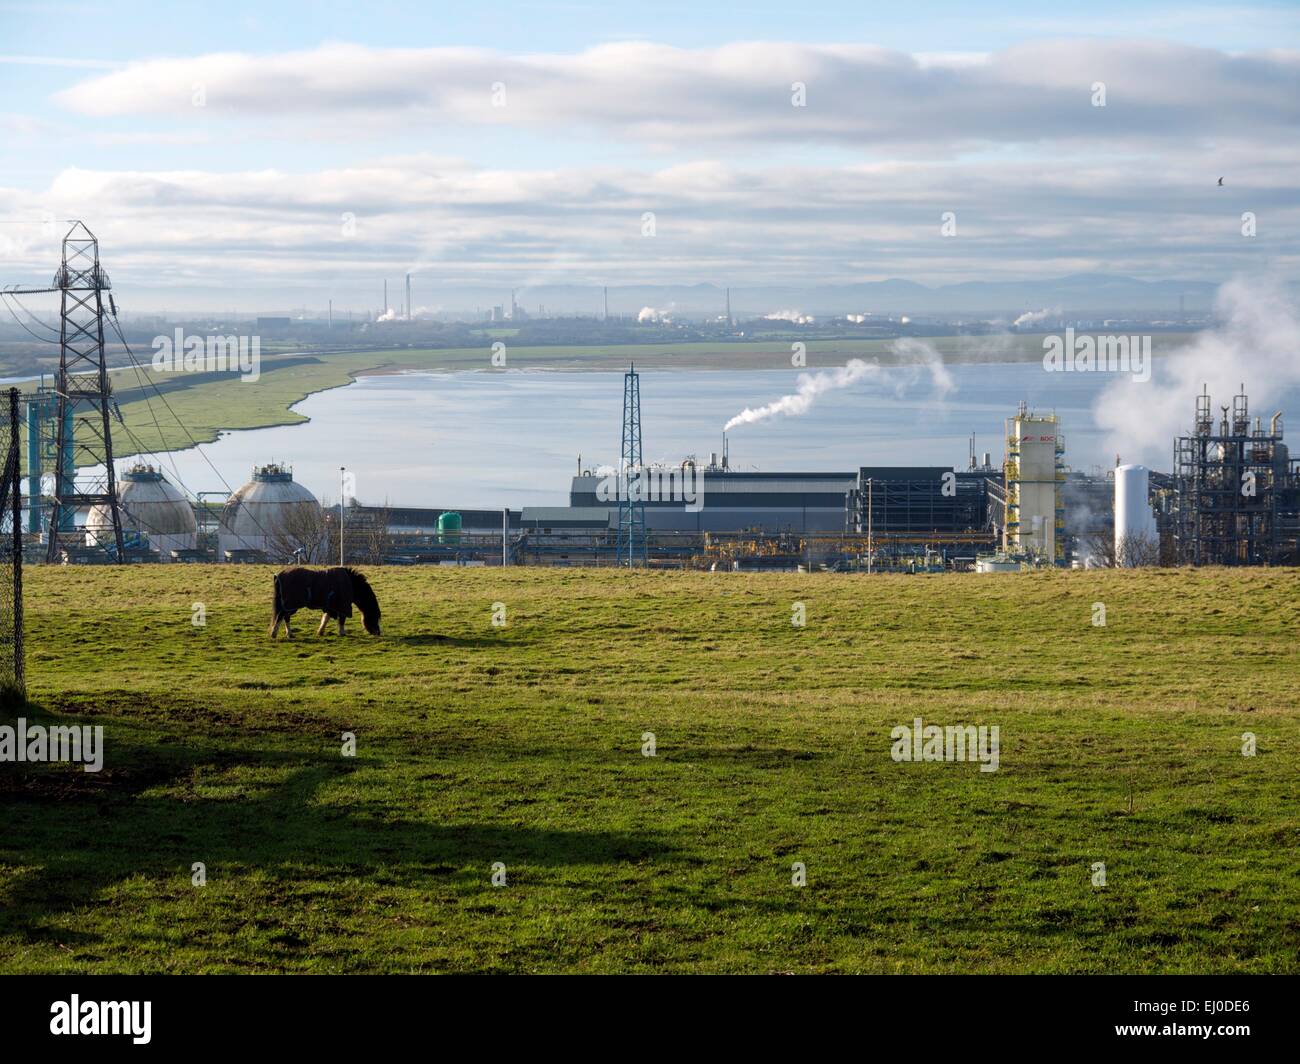 Cavallo al pascolo in un campo nella parte anteriore di un impianto chimico, con un fiume in background. Foto Stock